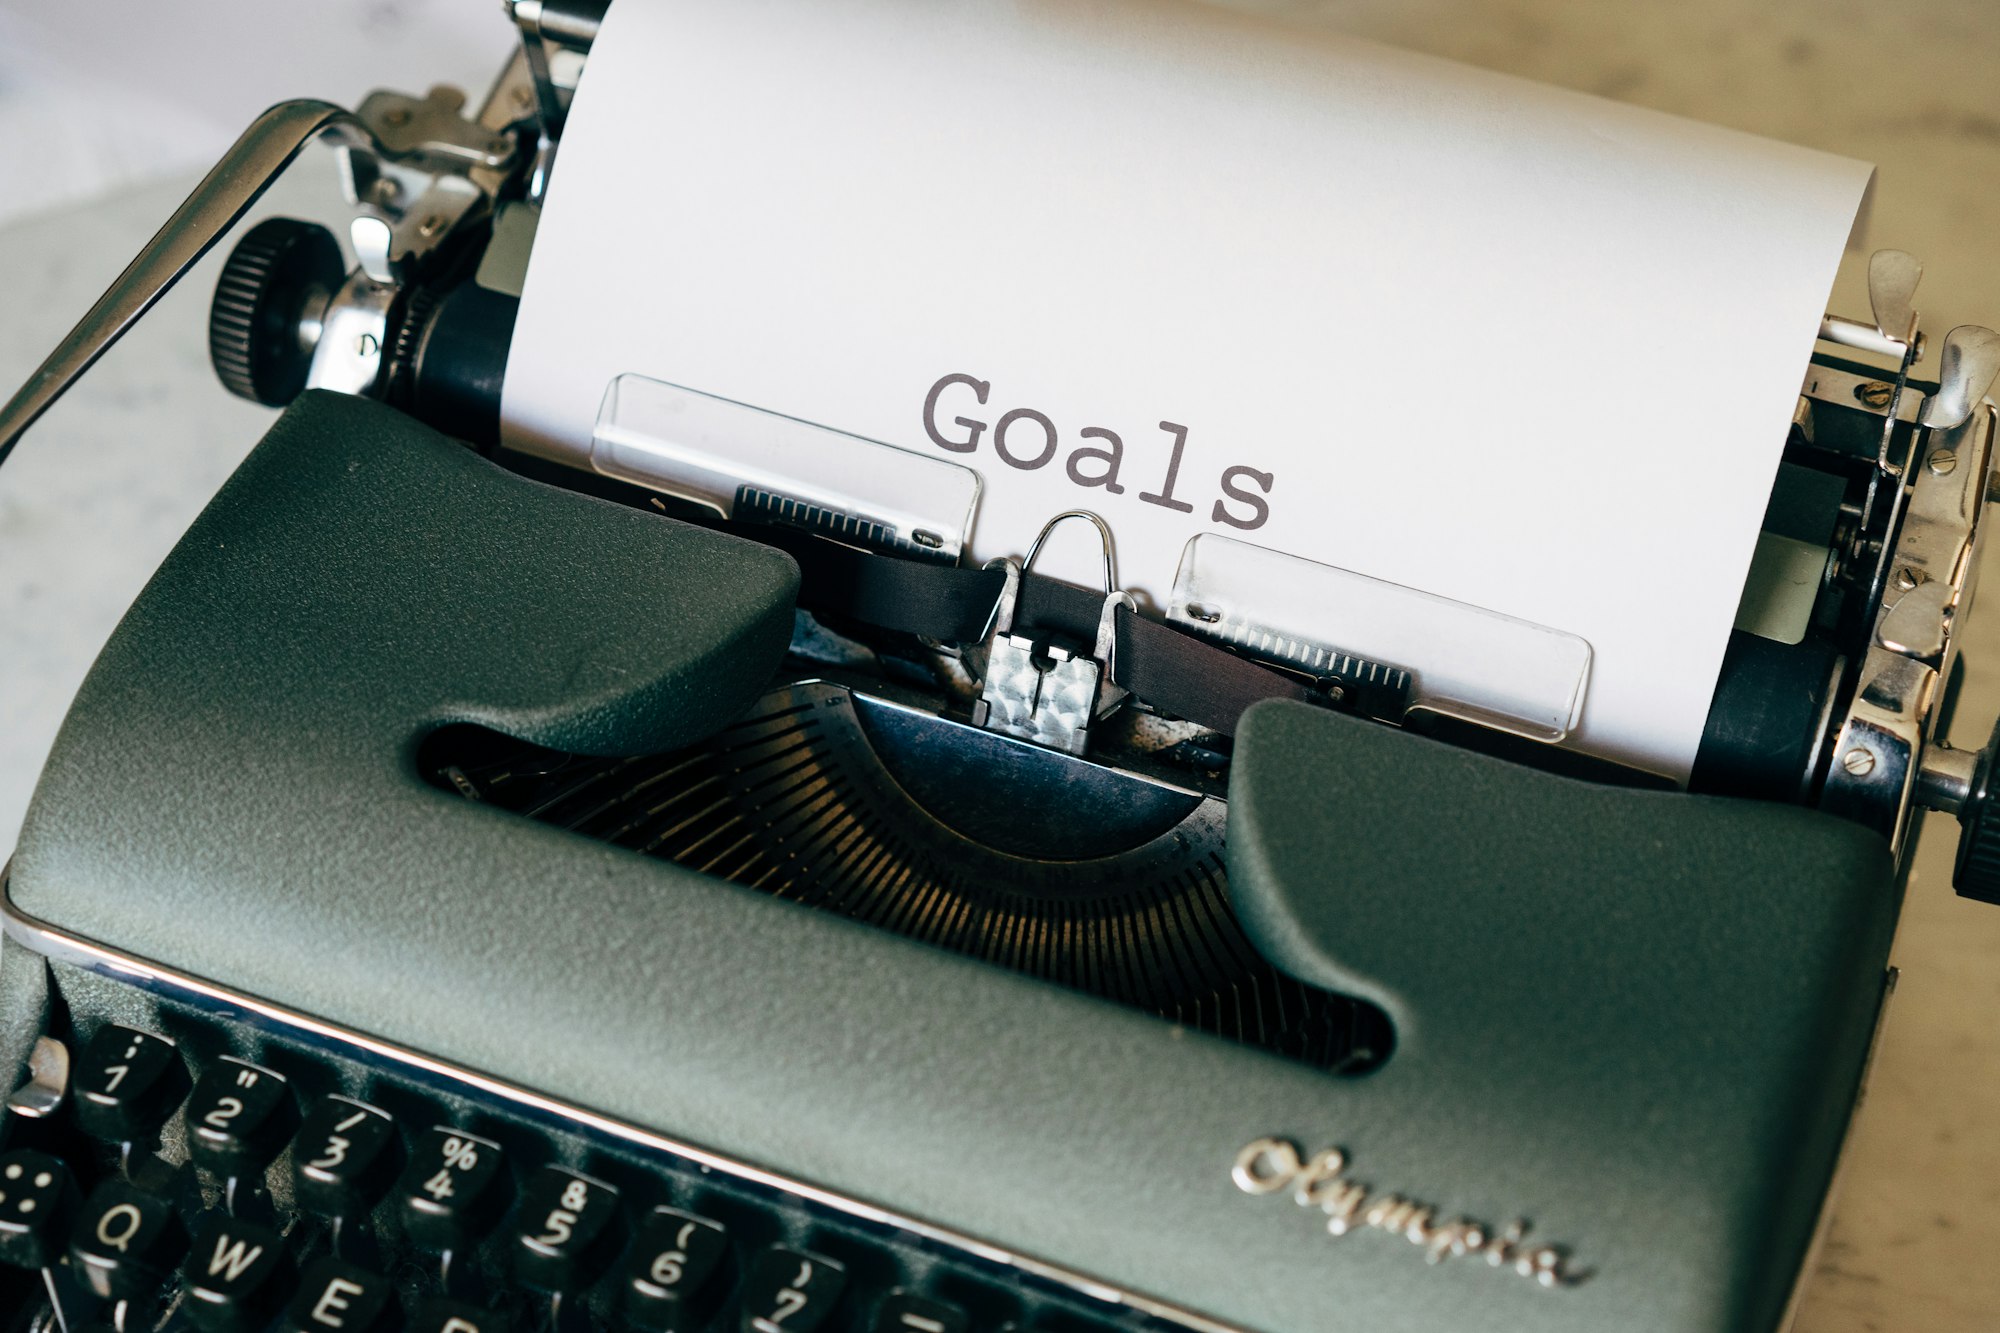 Typewriter with goals written